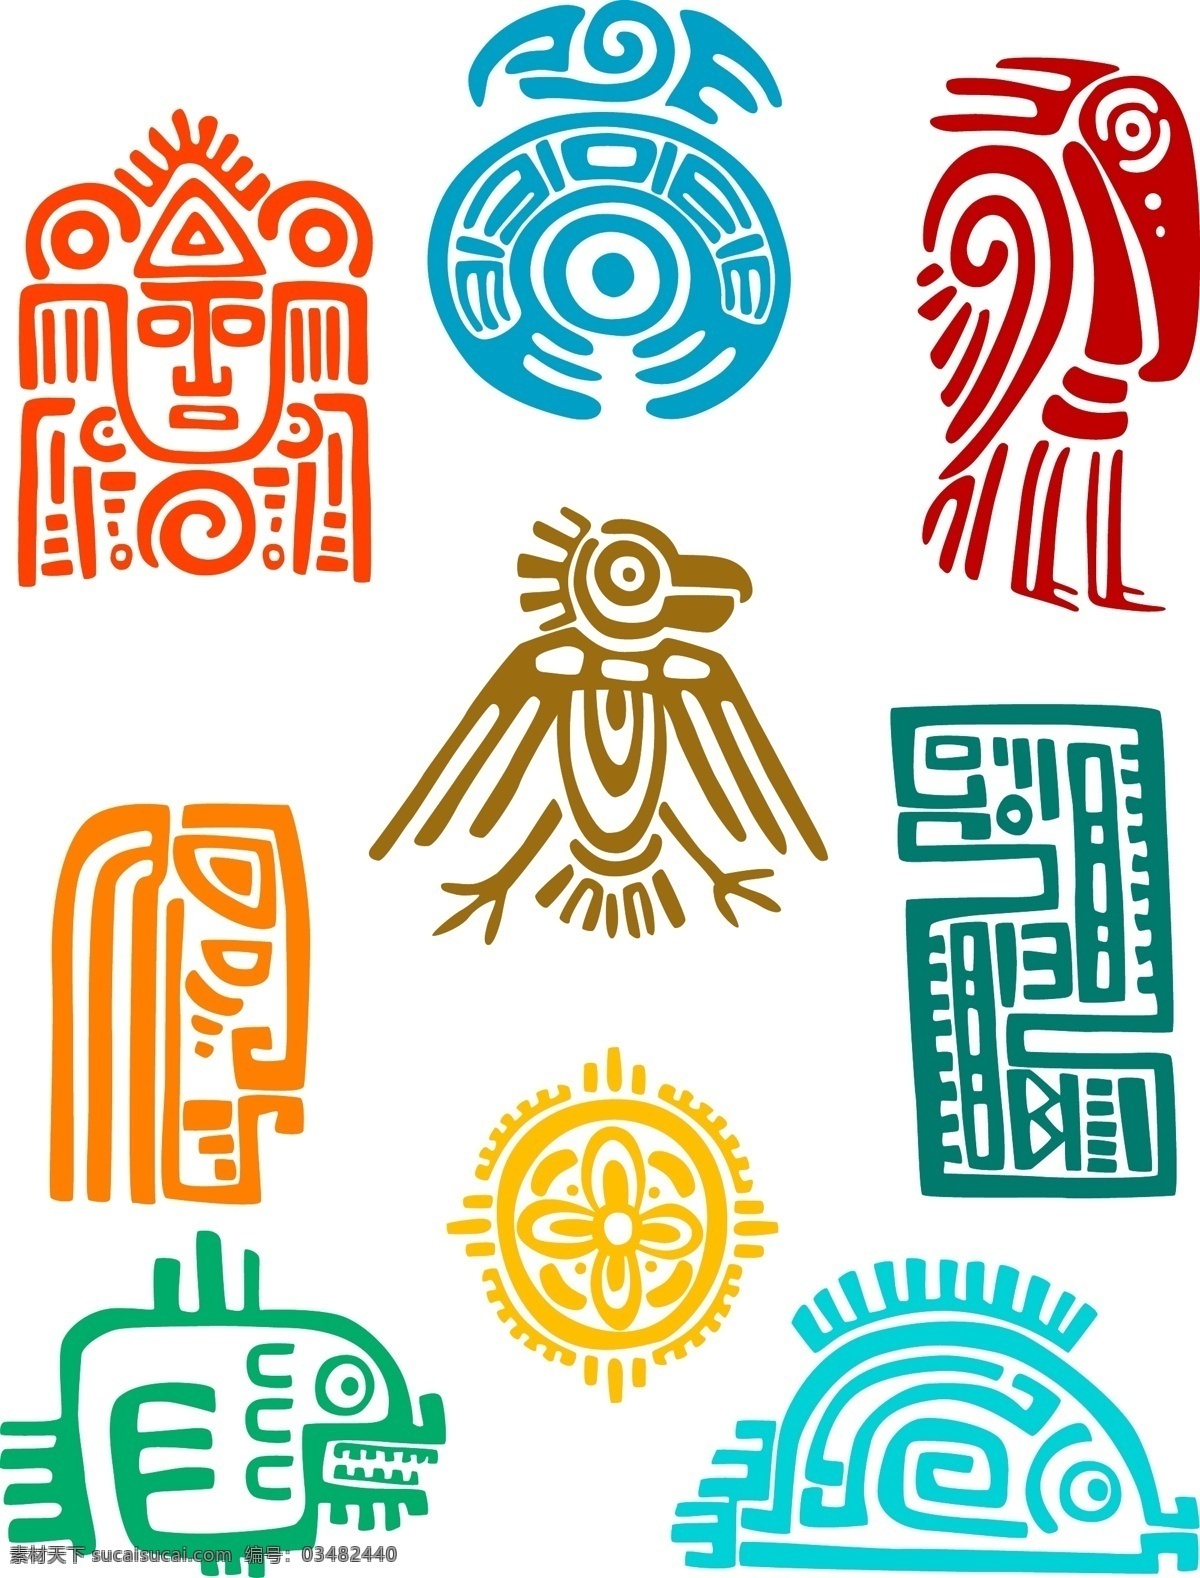 玛雅图腾 信仰 花纹 古文明 符号 象征 埃及 玛雅文化 玛雅 壁画 图腾 历史 古代 墨西哥 宗教信仰 文化艺术 矢量 底纹边框 背景底纹